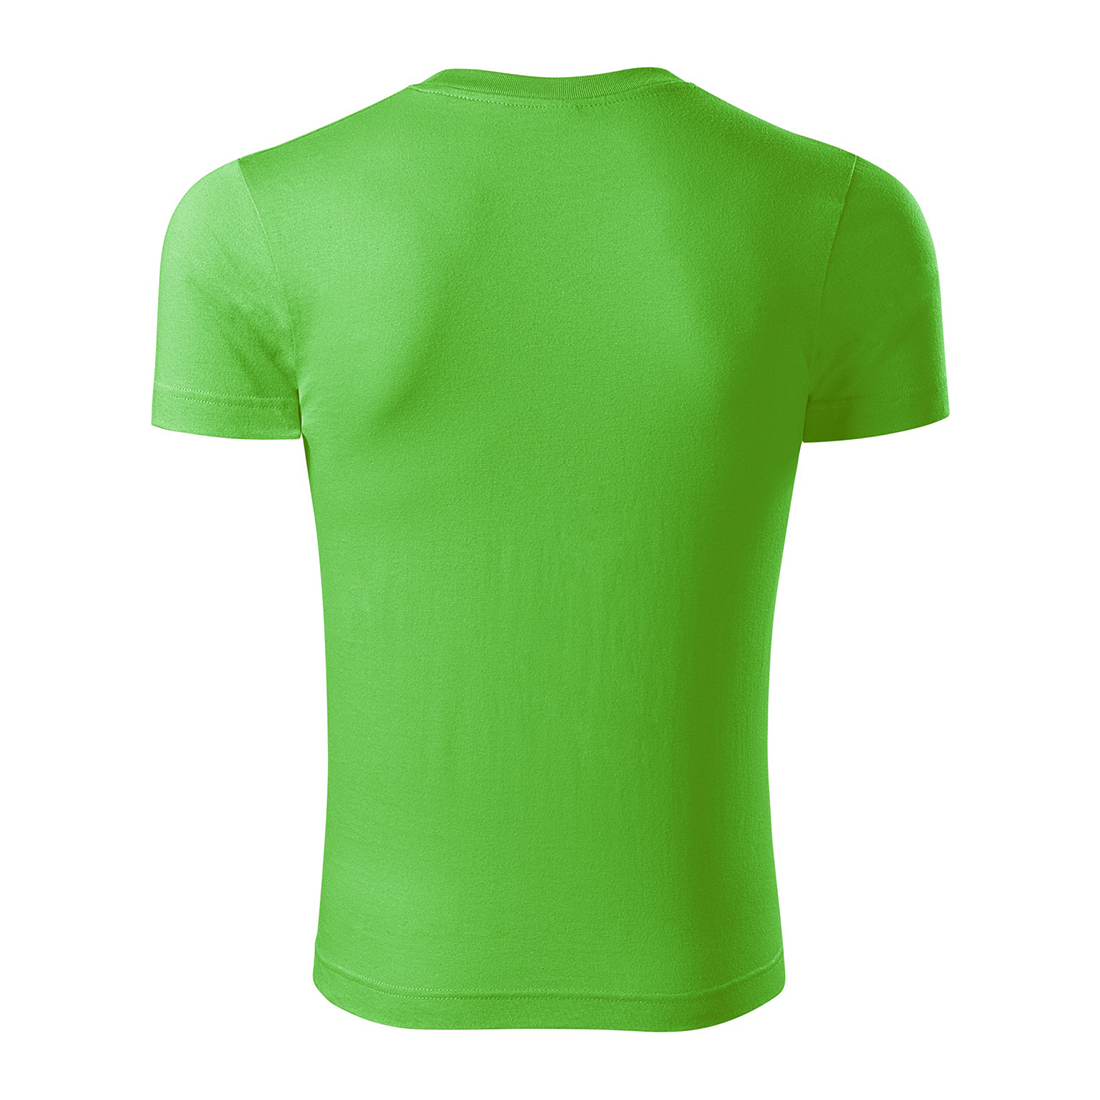 Camiseta unisex de algodón - Ropa de protección